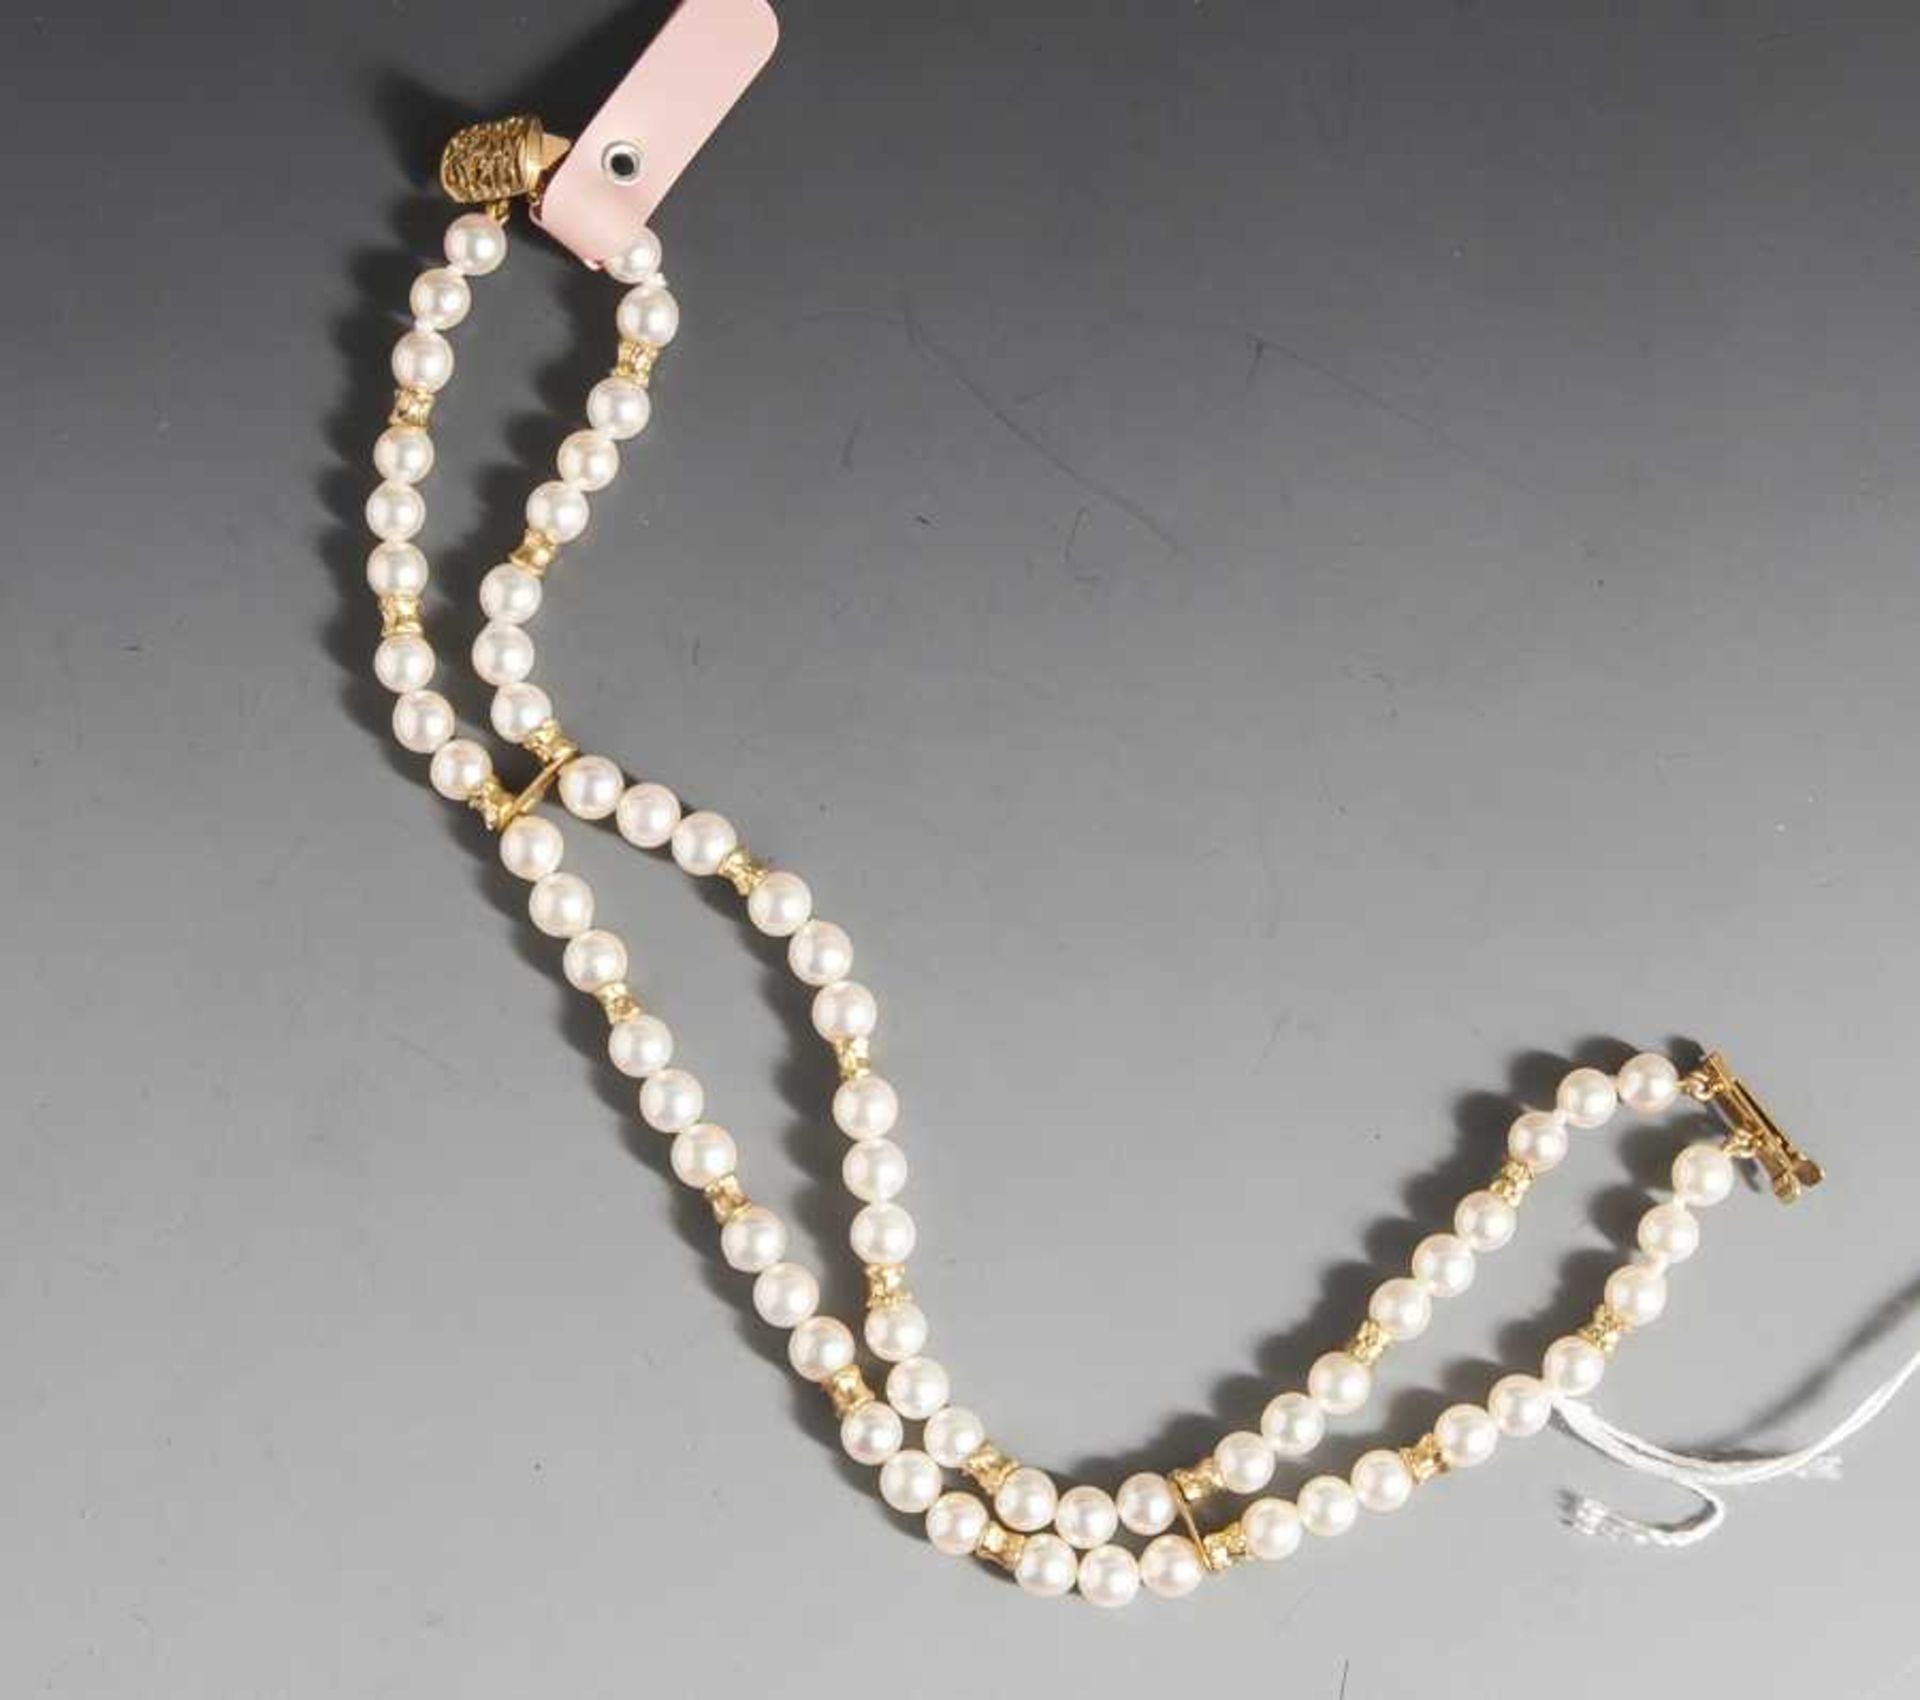 Armband mit 66 kleinen Perlen, doppelreihig, Goldverschluss 333. L. ca. 19,5 cm. DamaligerNP 1250